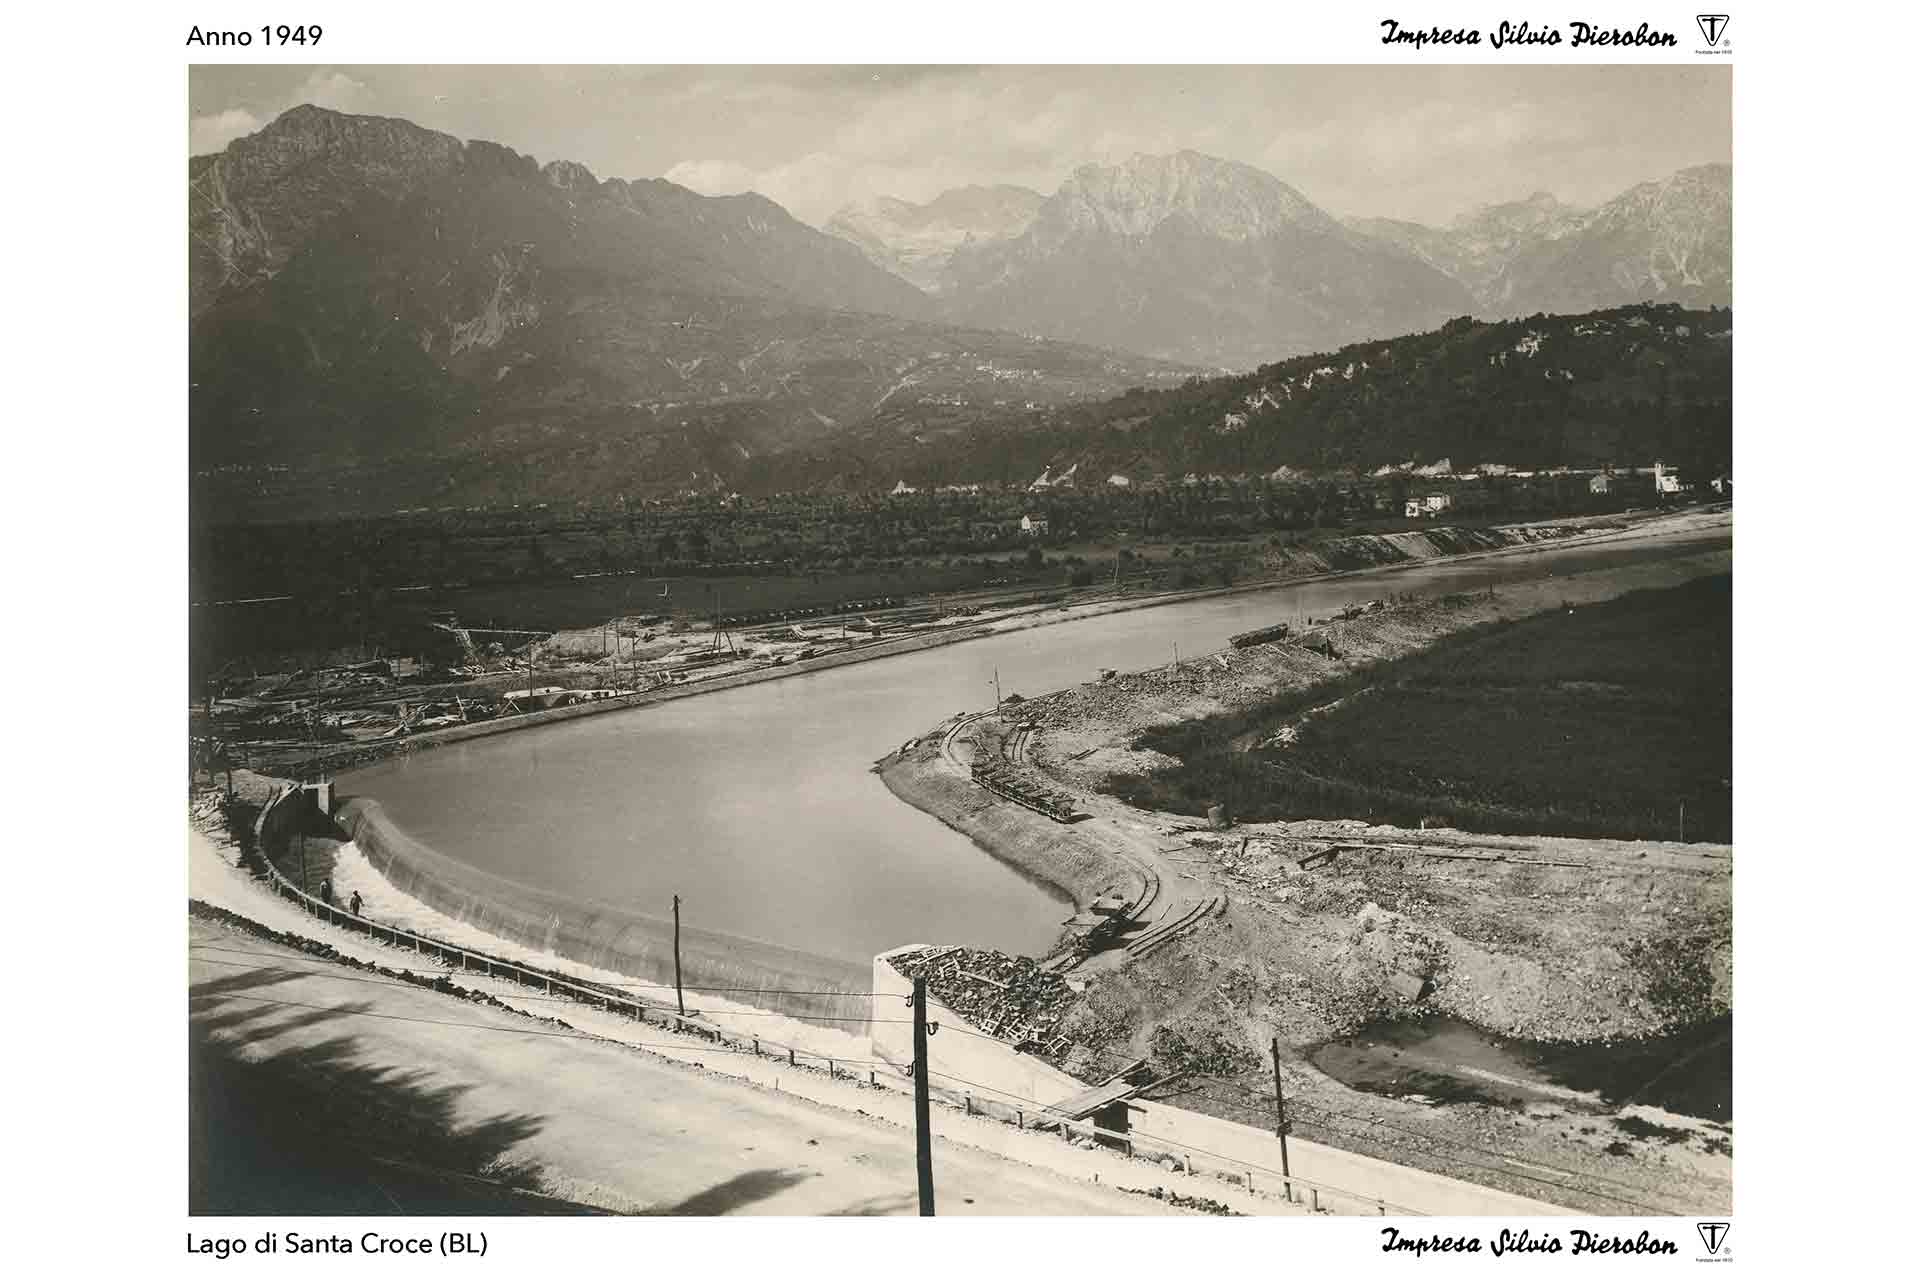 Silvio Pierobon Santa Croce Lago 1949